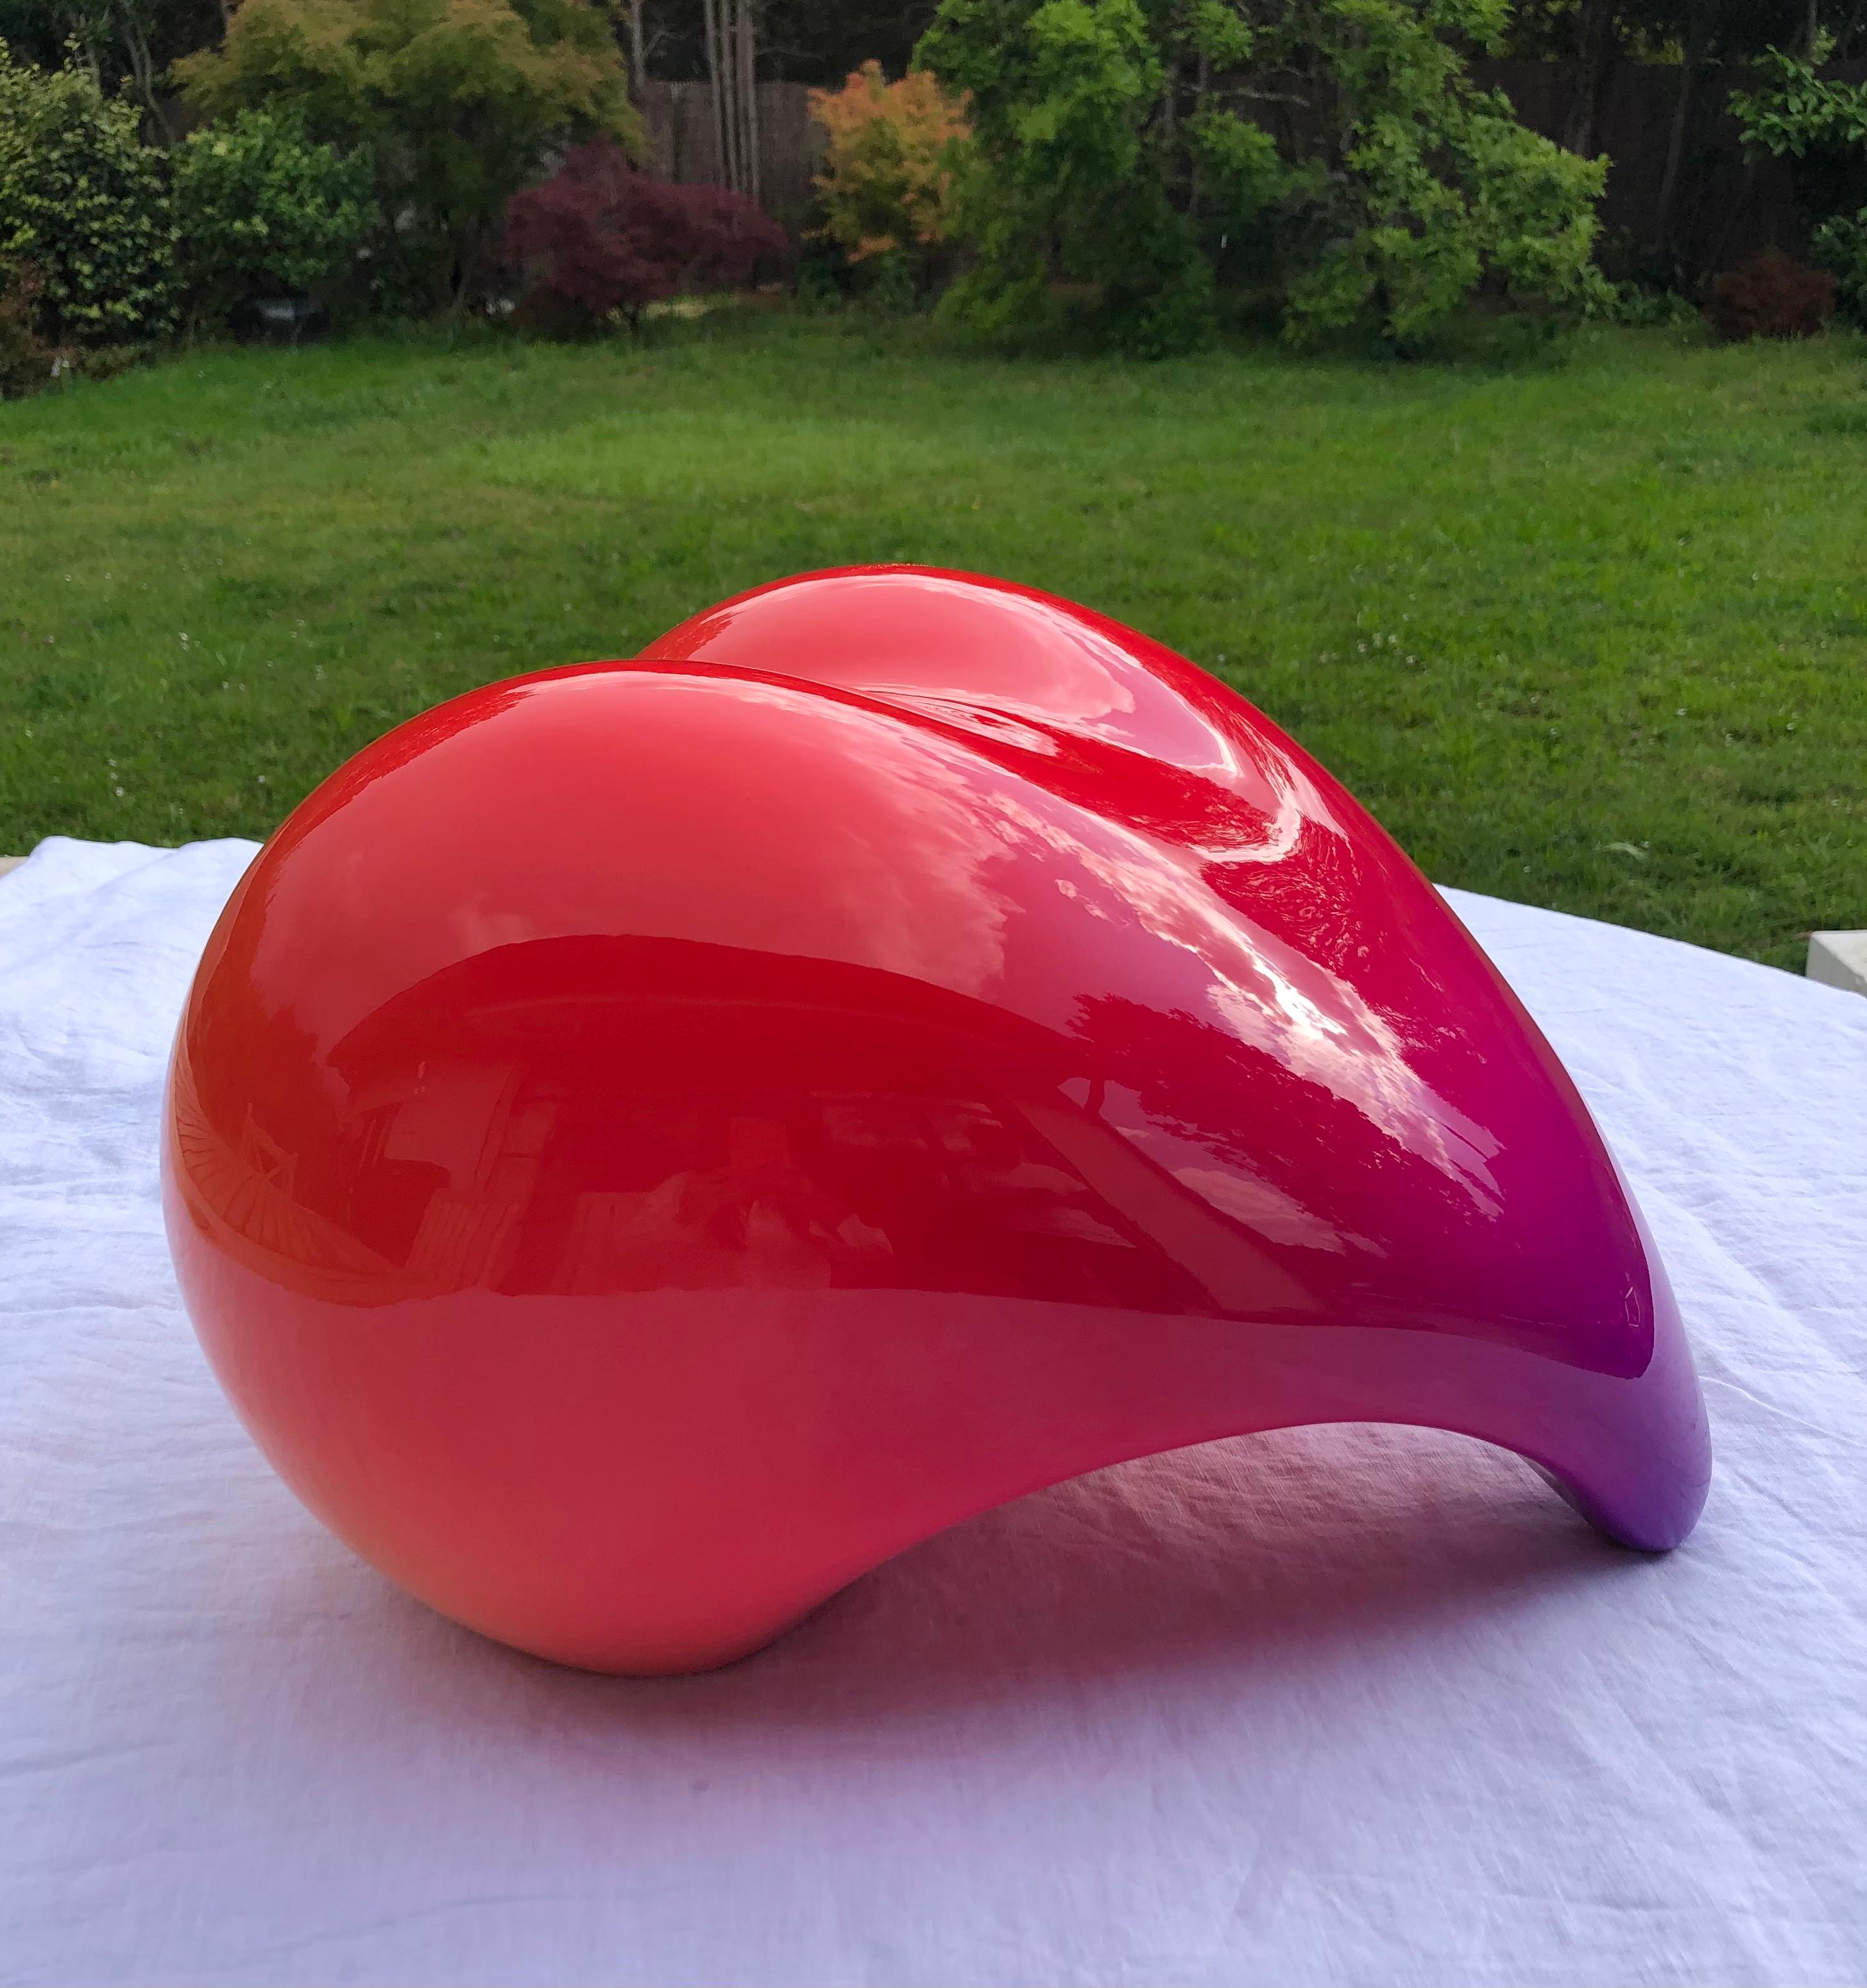 Stell dir vor II (Pink), Abstract Sculpture, von Cat Sirot